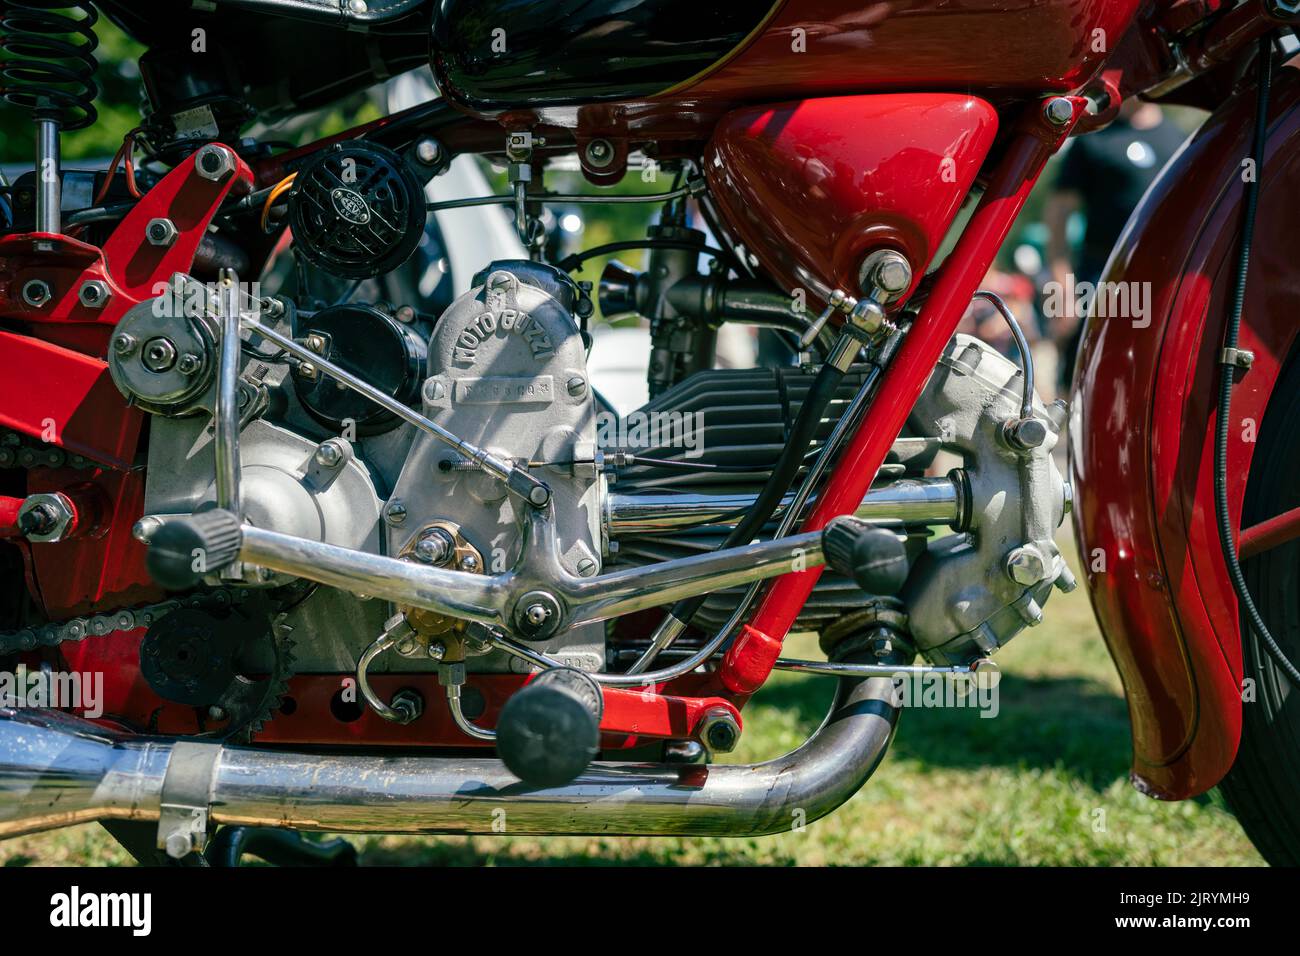 Moto guzzi motorbike immagini e fotografie stock ad alta risoluzione - Alamy